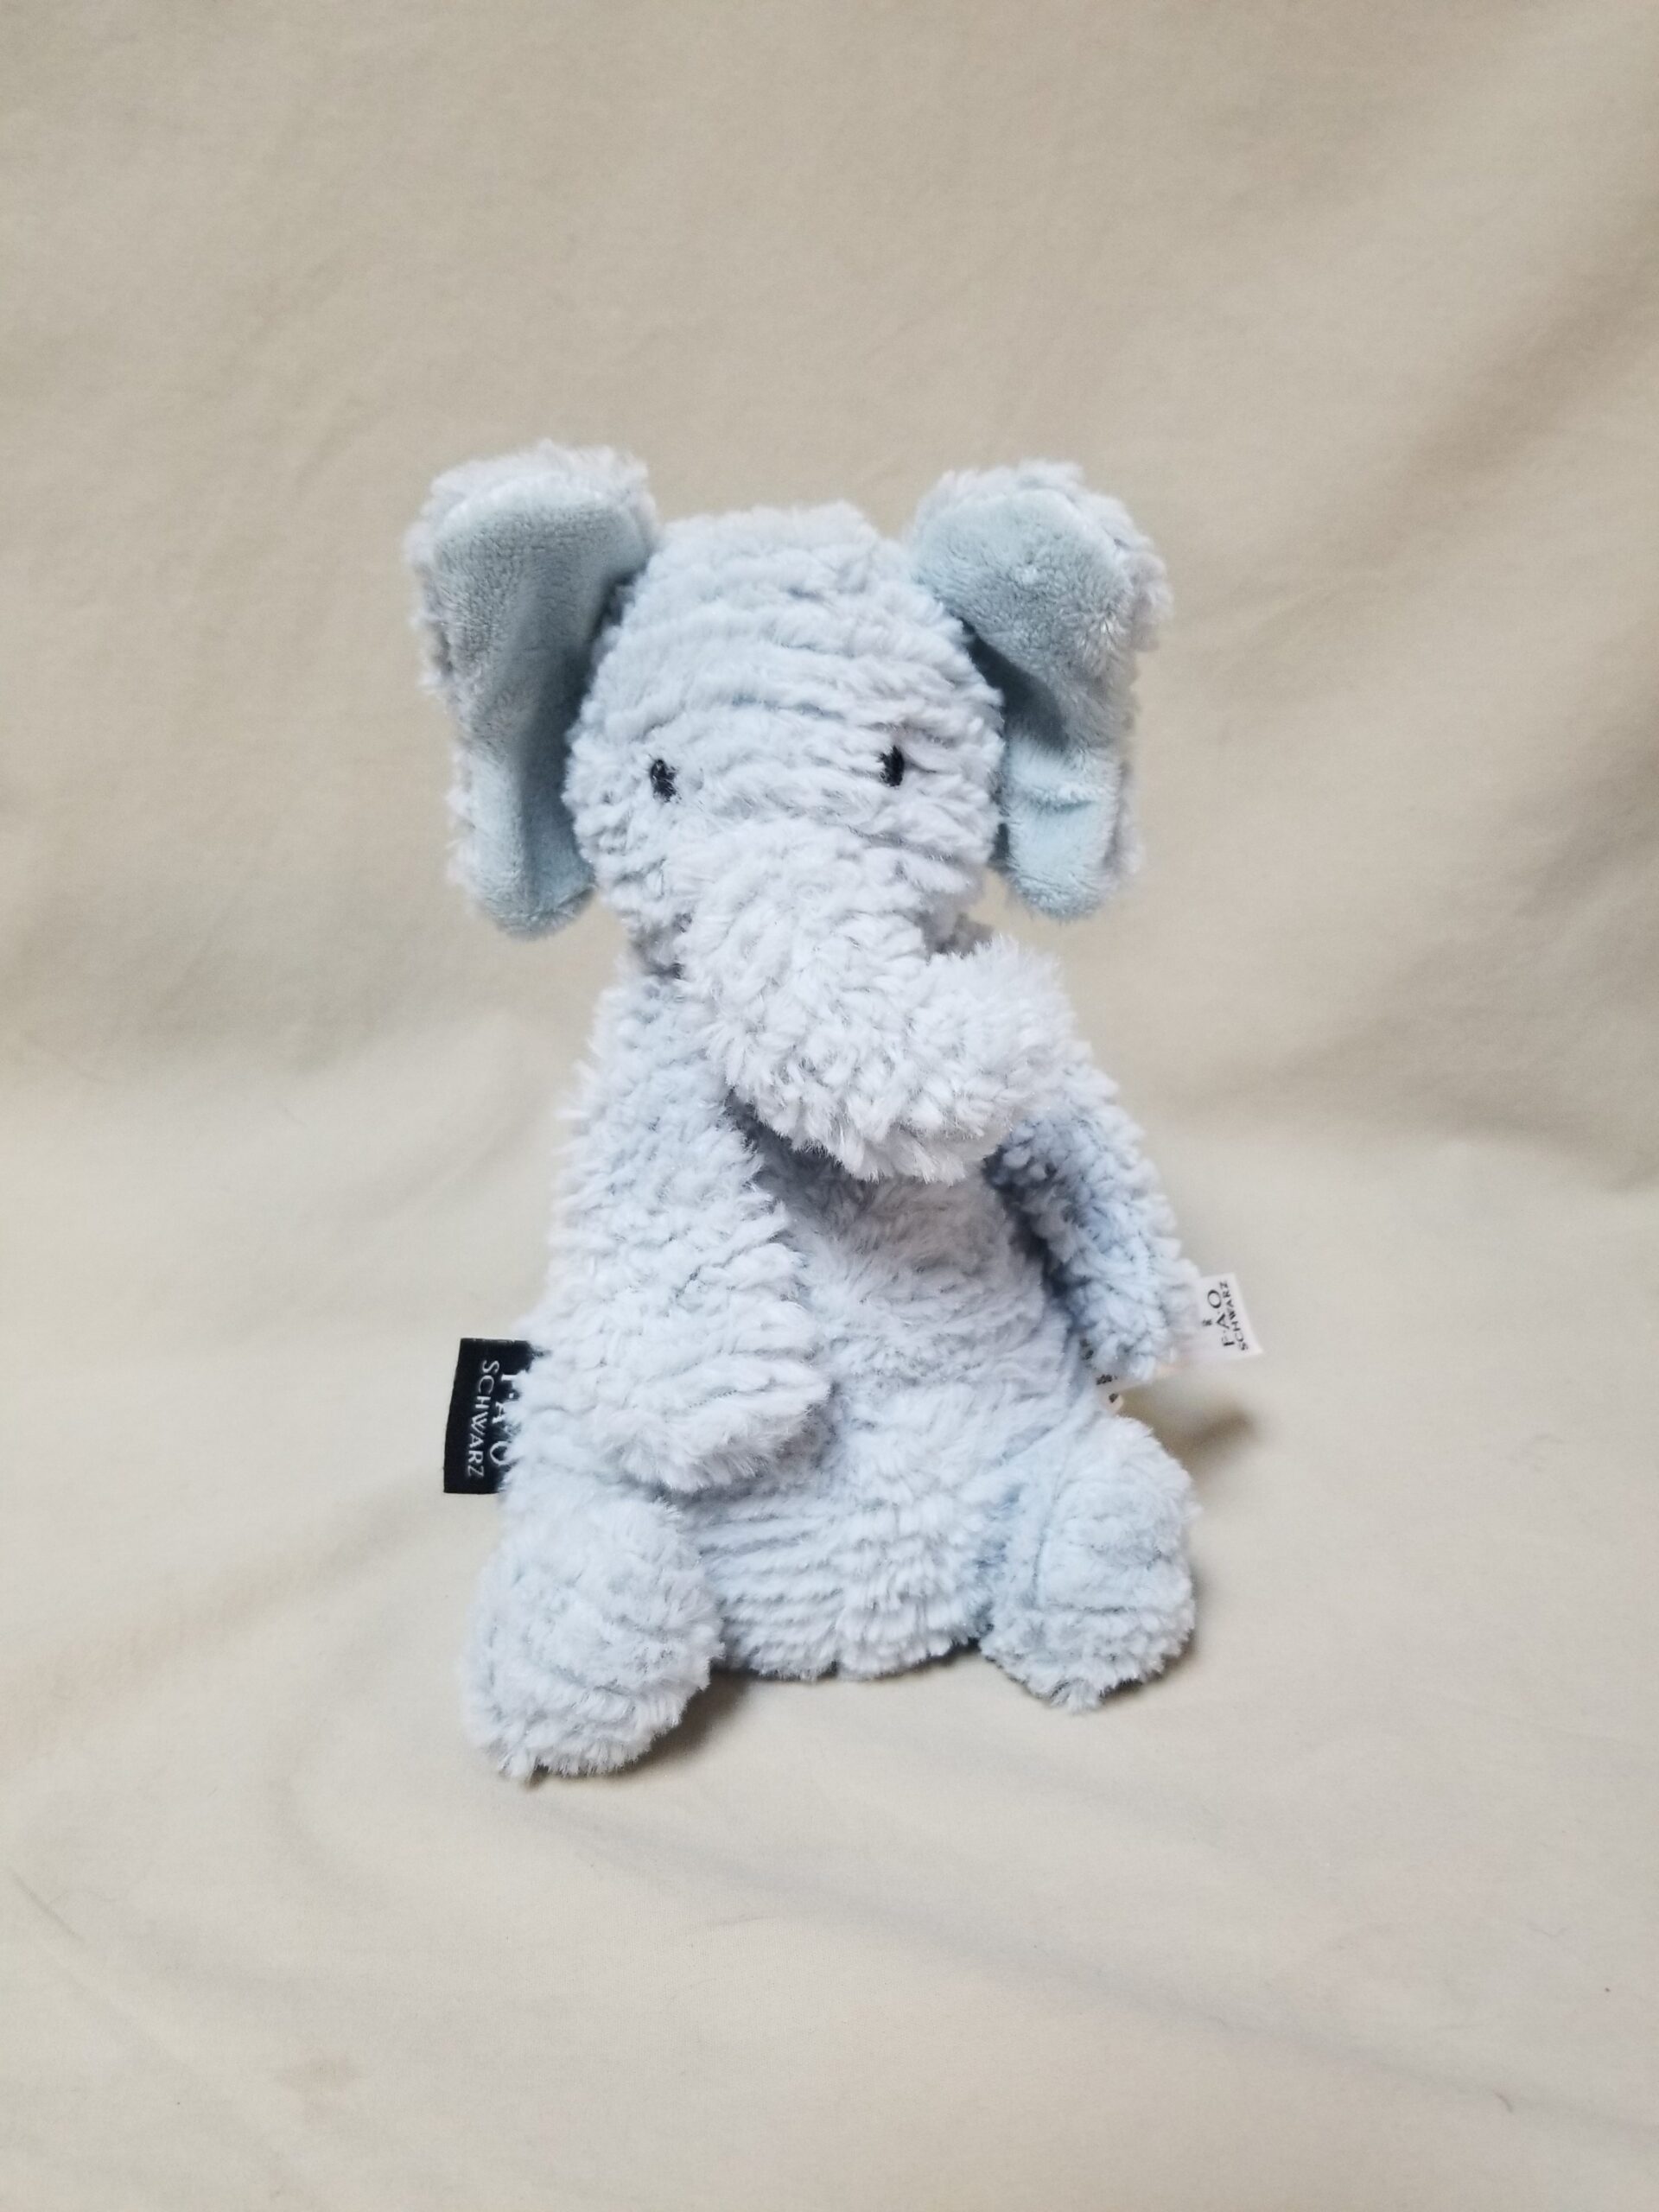 Plush elephant toy FAO Schwarz